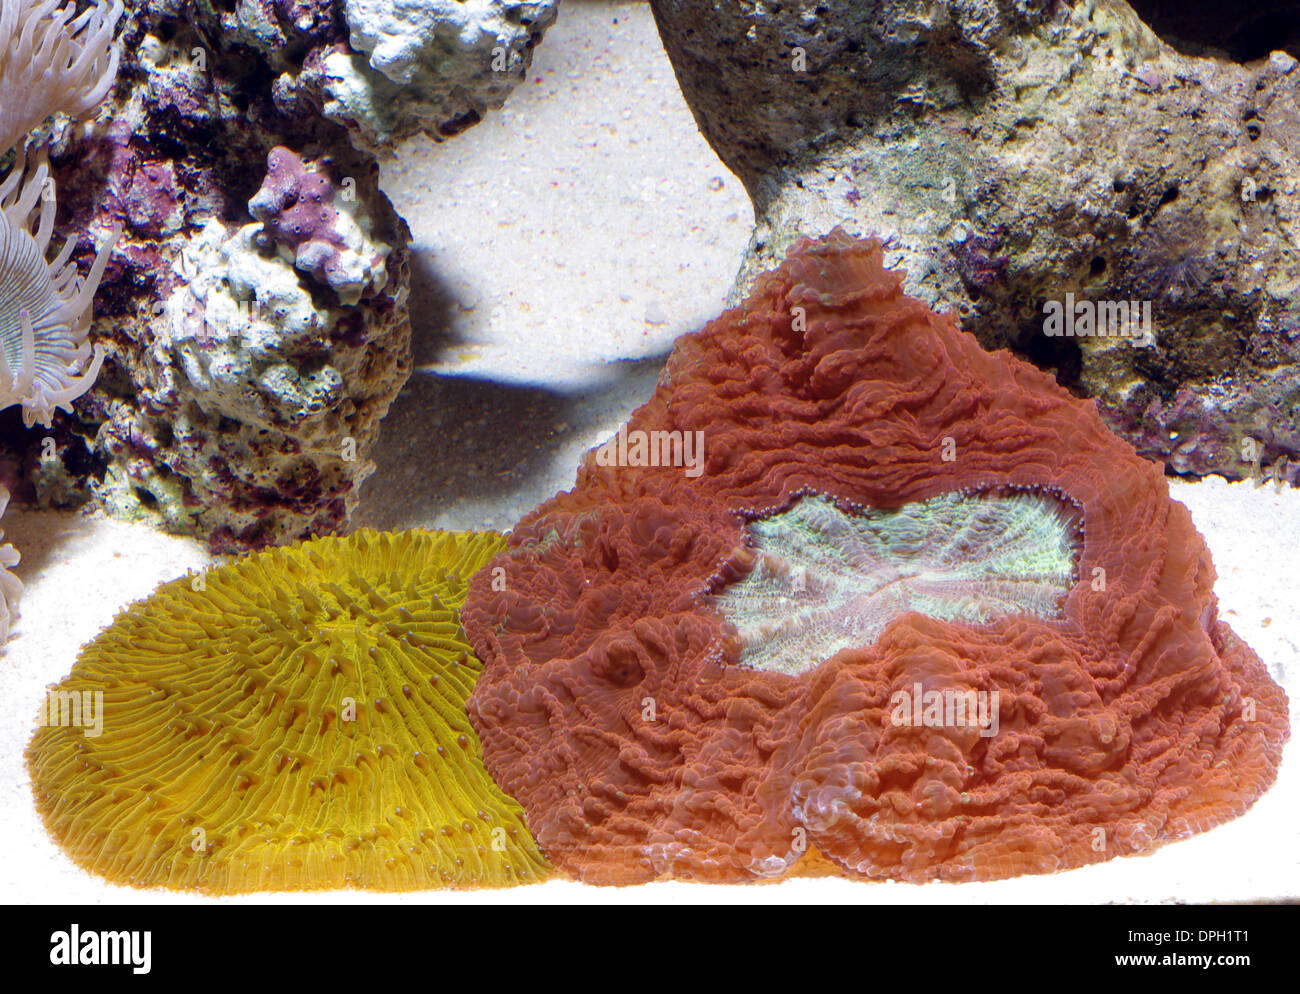 Button coral (Scolymia vitiensis( and mushroom coral (Fungia fungites) in aquarium Stock Photo